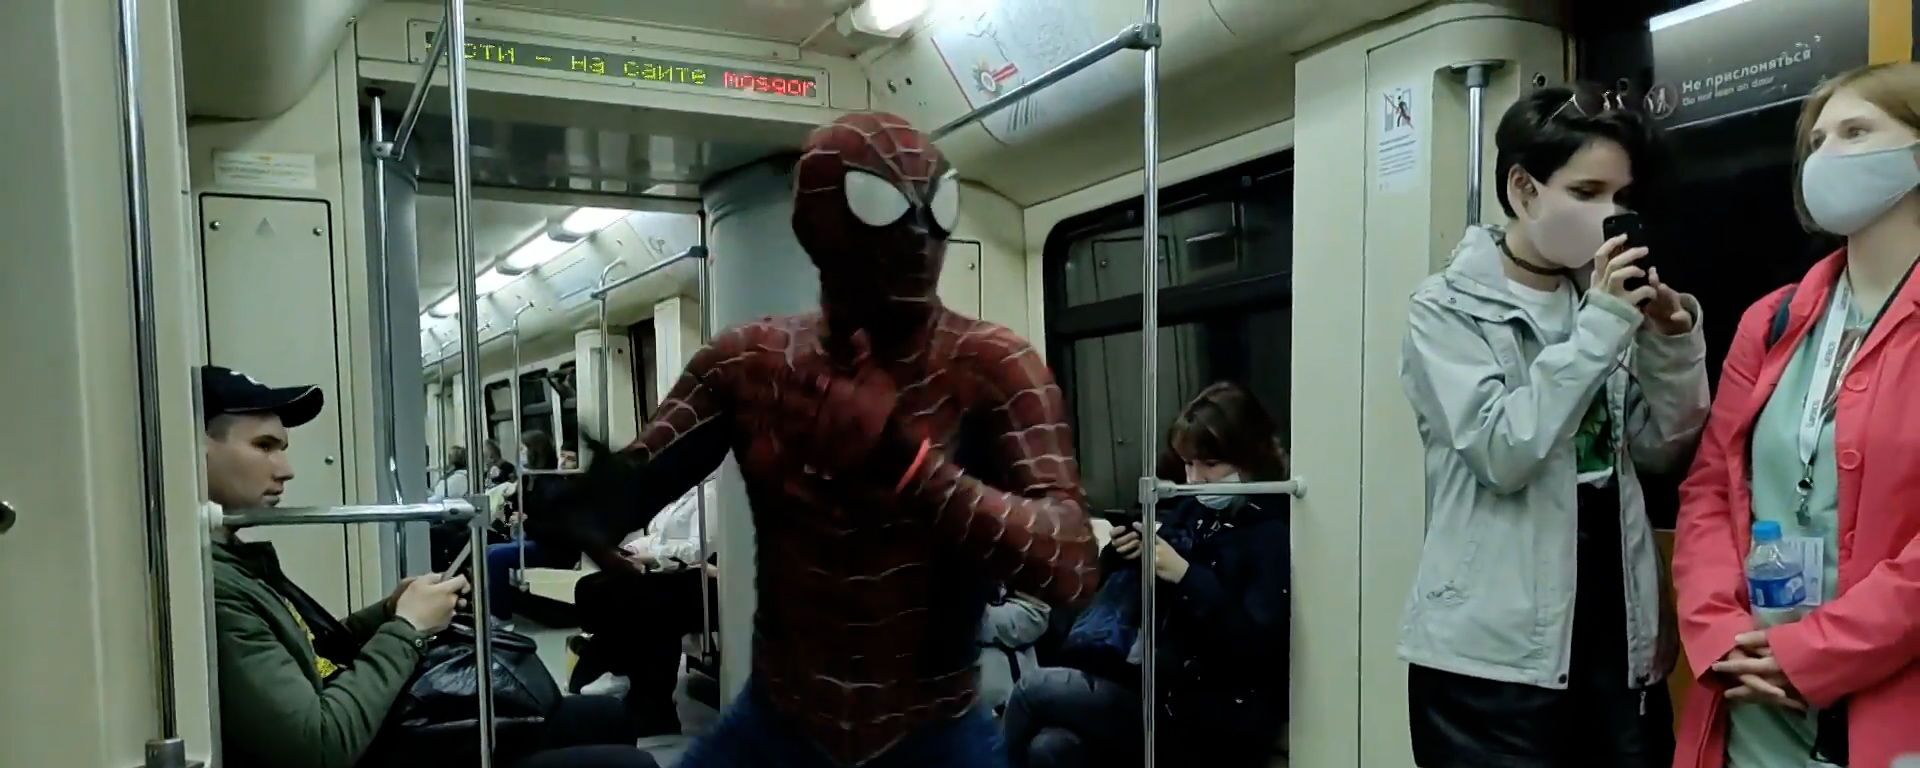 Видеофакт: Человек-паук прокатился в московском метро  - Sputnik Беларусь, 1920, 14.05.2021